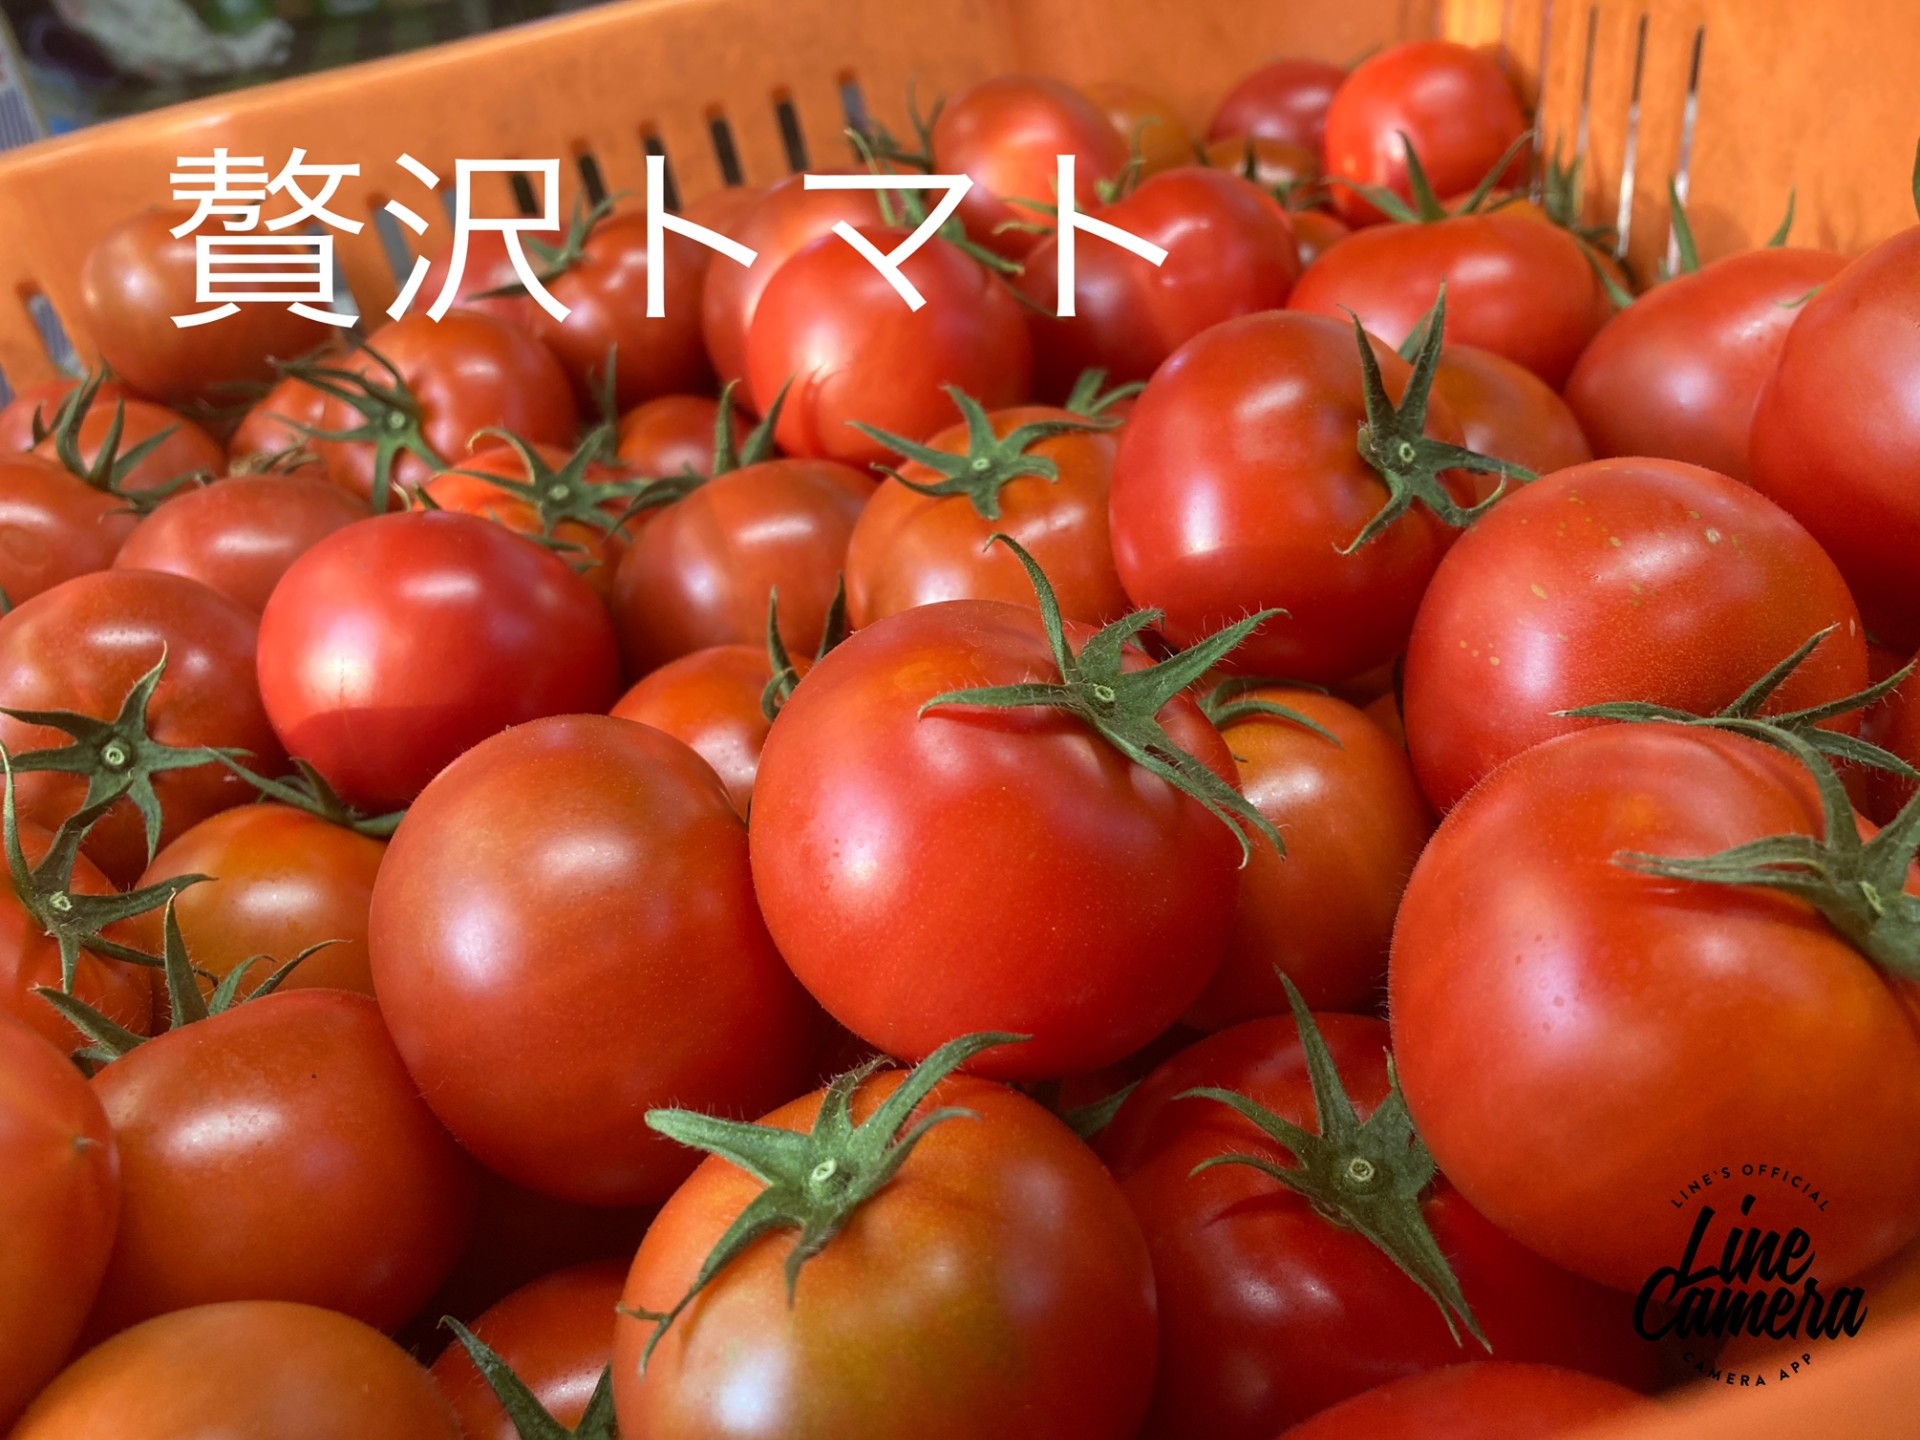 デルモンテ社が最もトマトらしい美味しさにこだわり作られたトマトです。酸味と甘みのバランスが抜群で滑らかな食感とフルーツ感覚の旨みは完成された優れたトマトです。